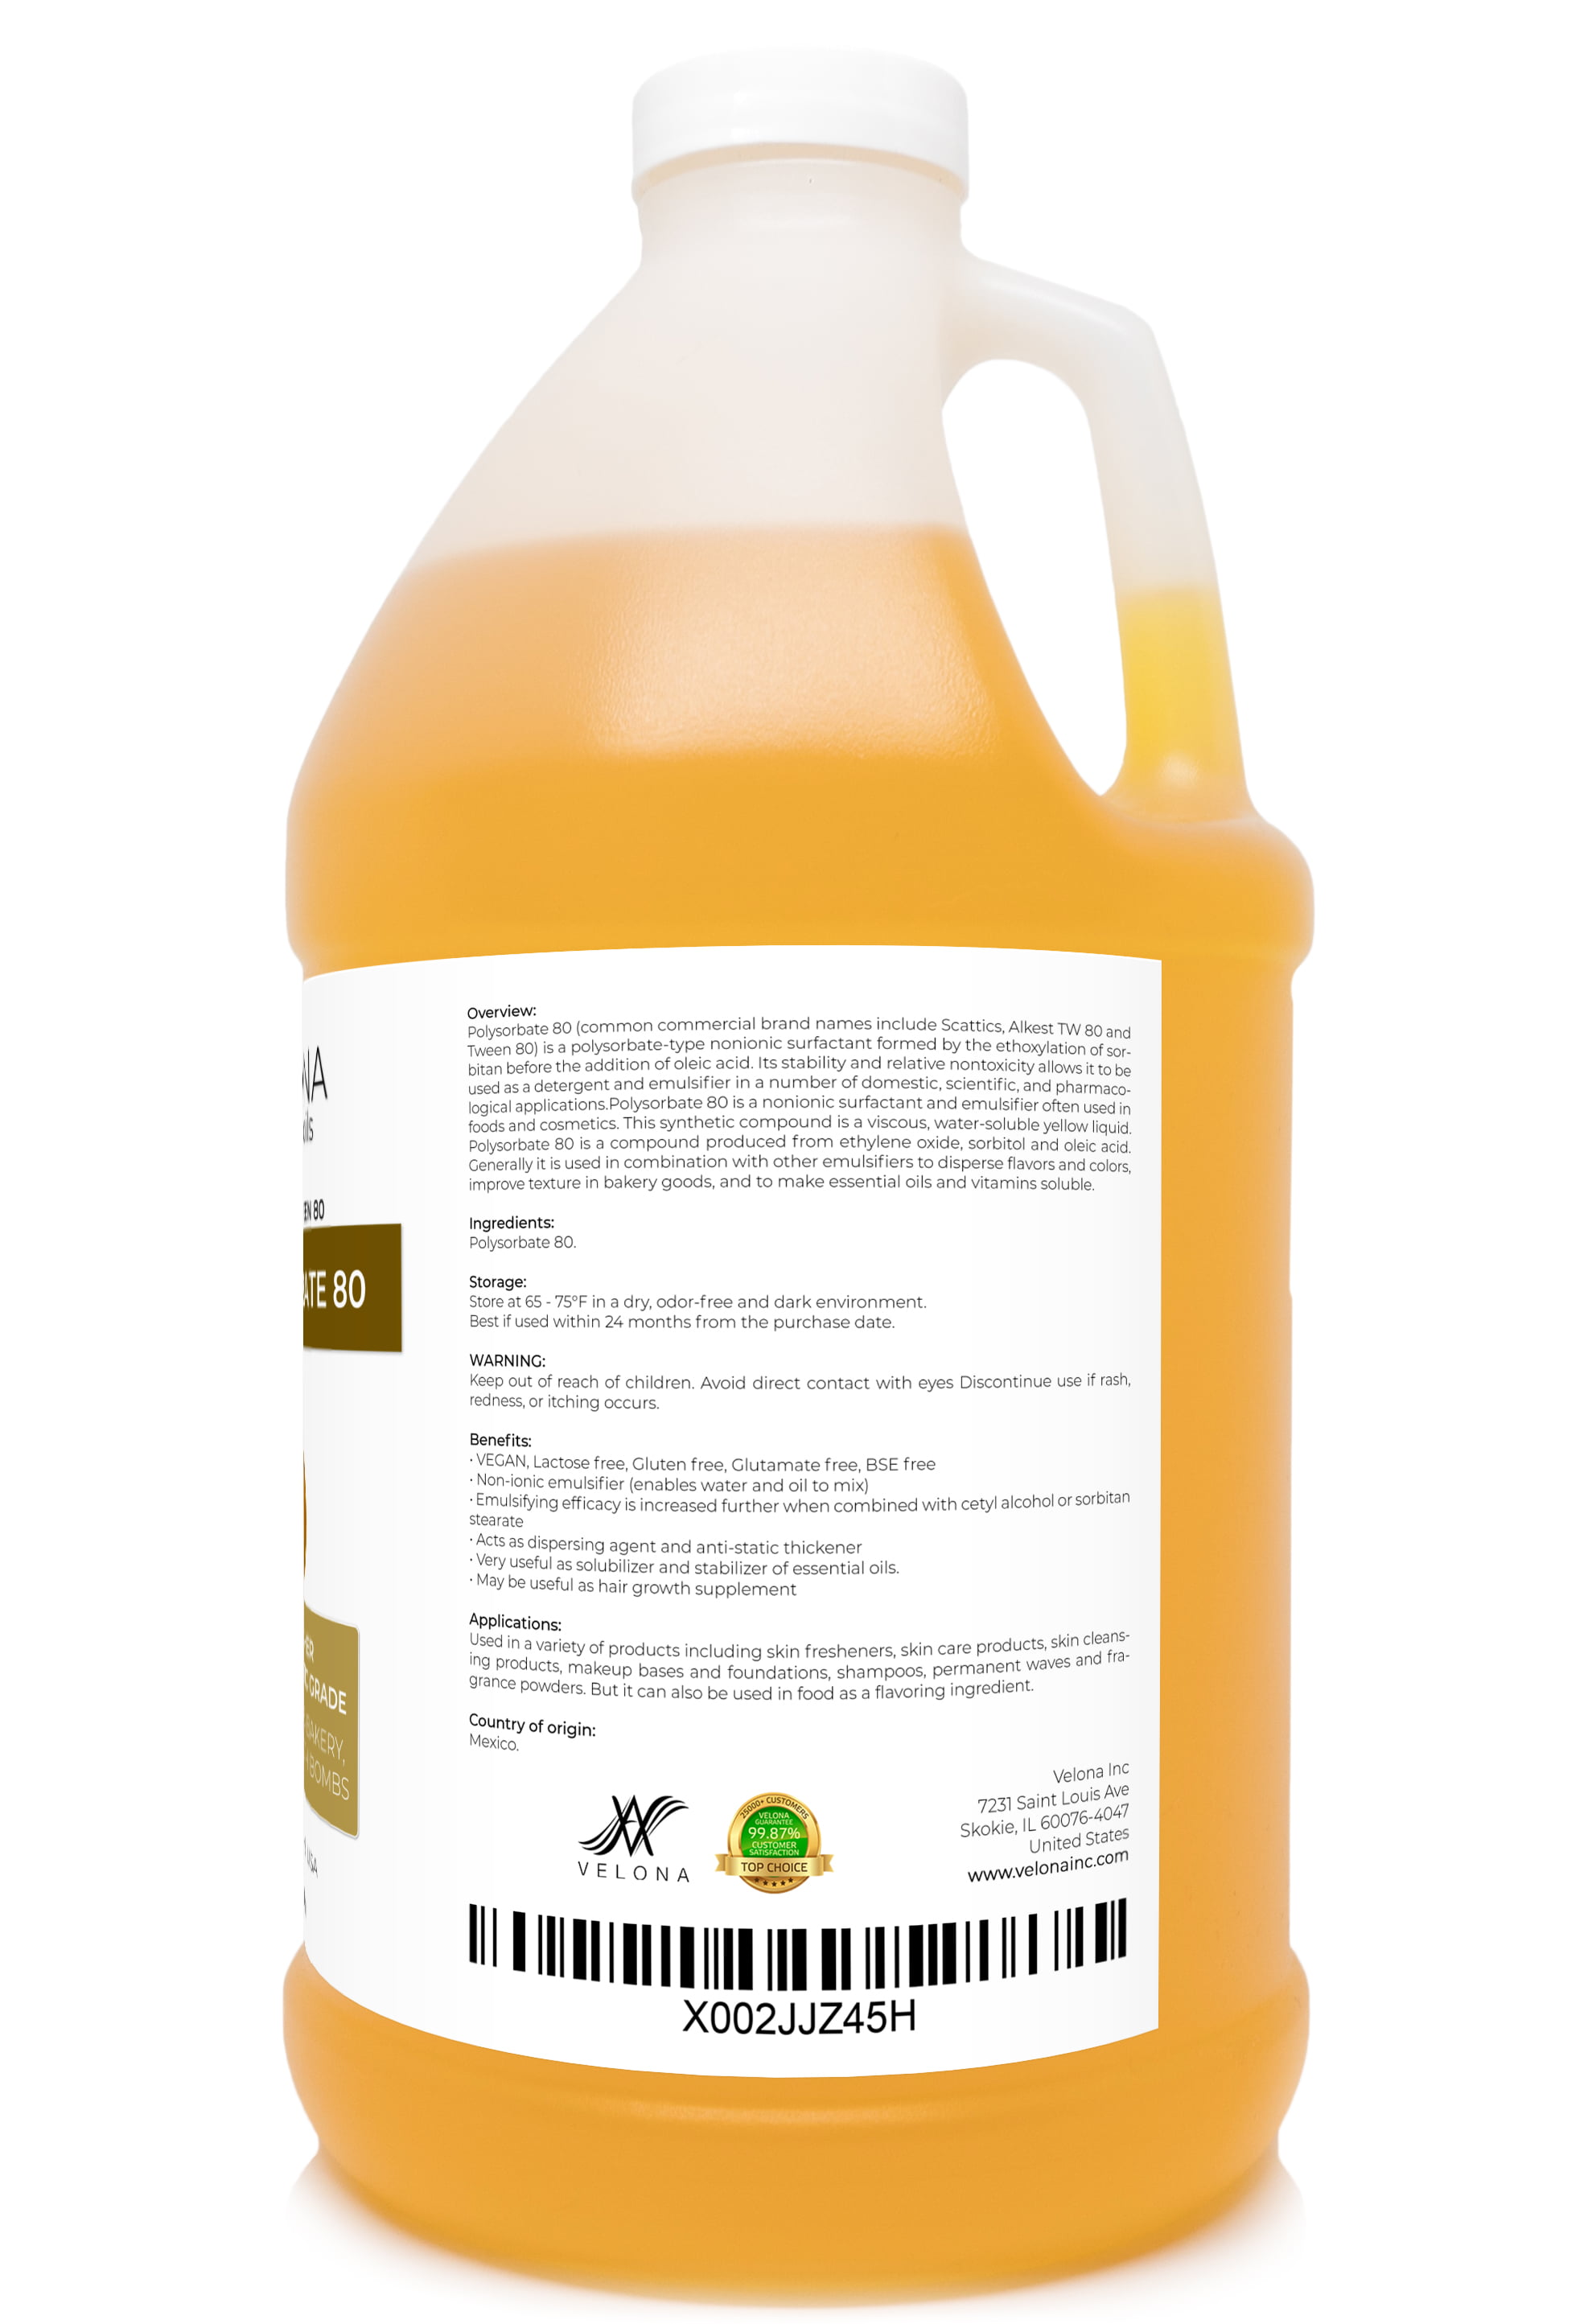 Emulsifying Wax NF, Non-GMO Premium Quality Polysorbate 60/ Polawax 80 oz /  5 Pound